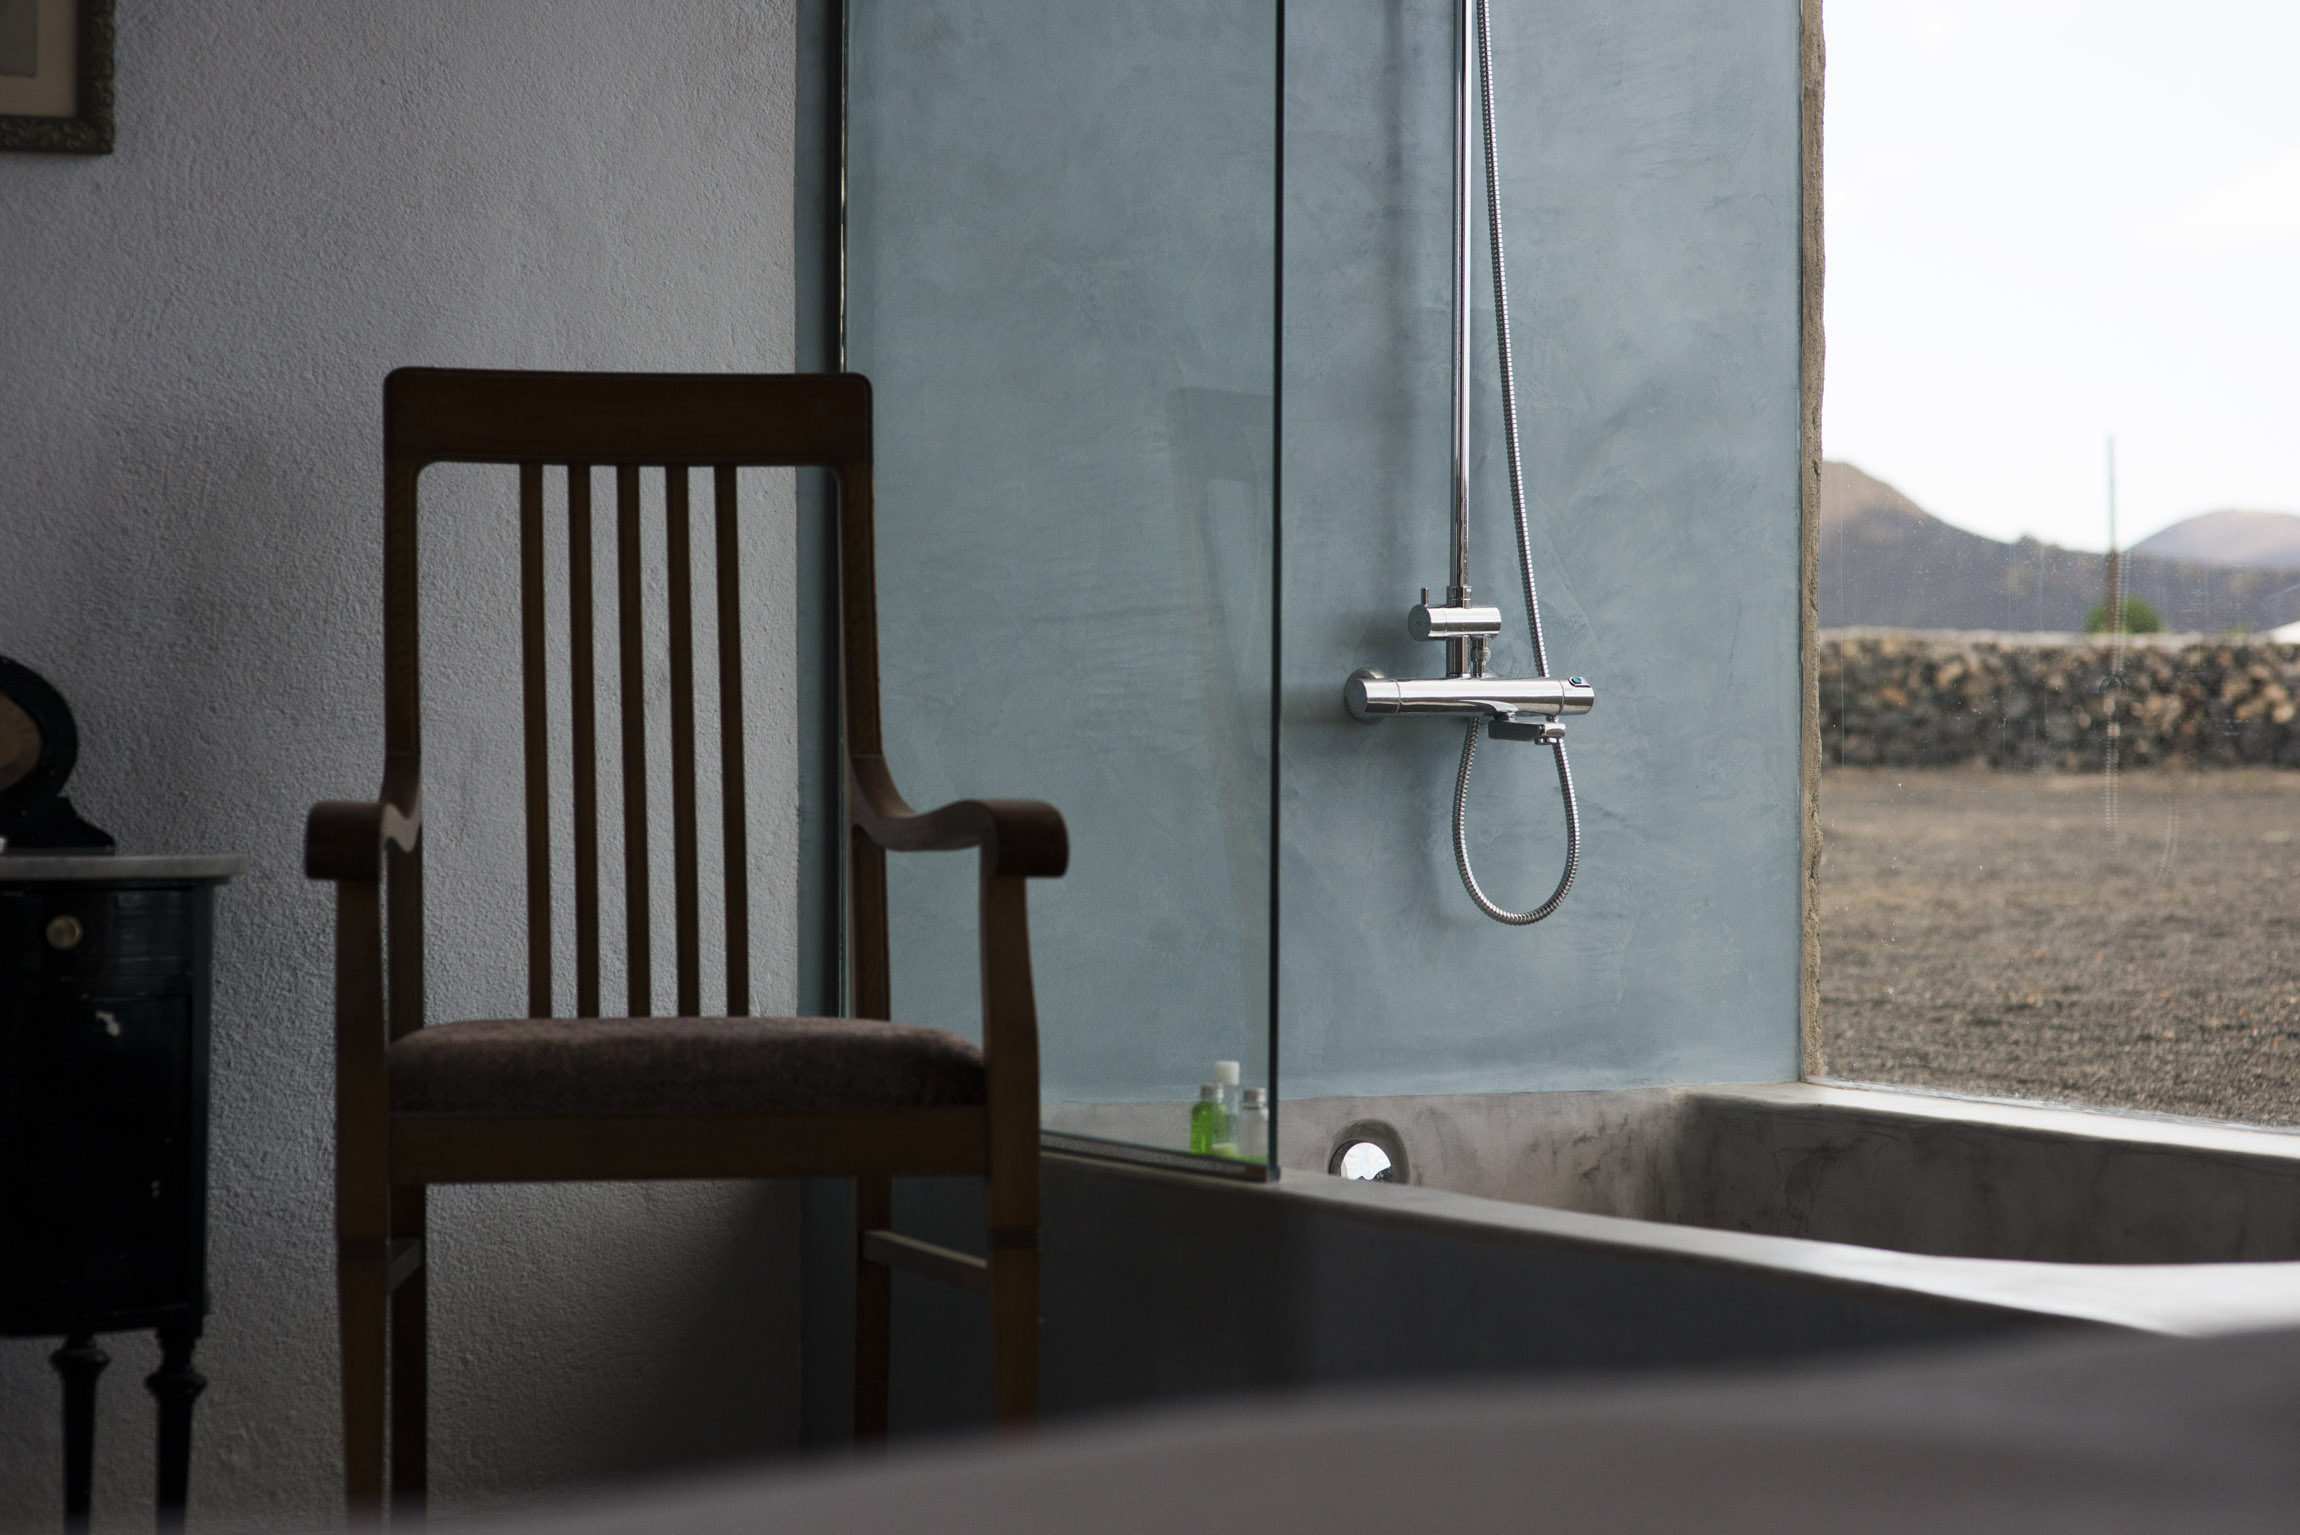 Buenavista Lanzarote Country Suites casa oeste bedroom bath detail